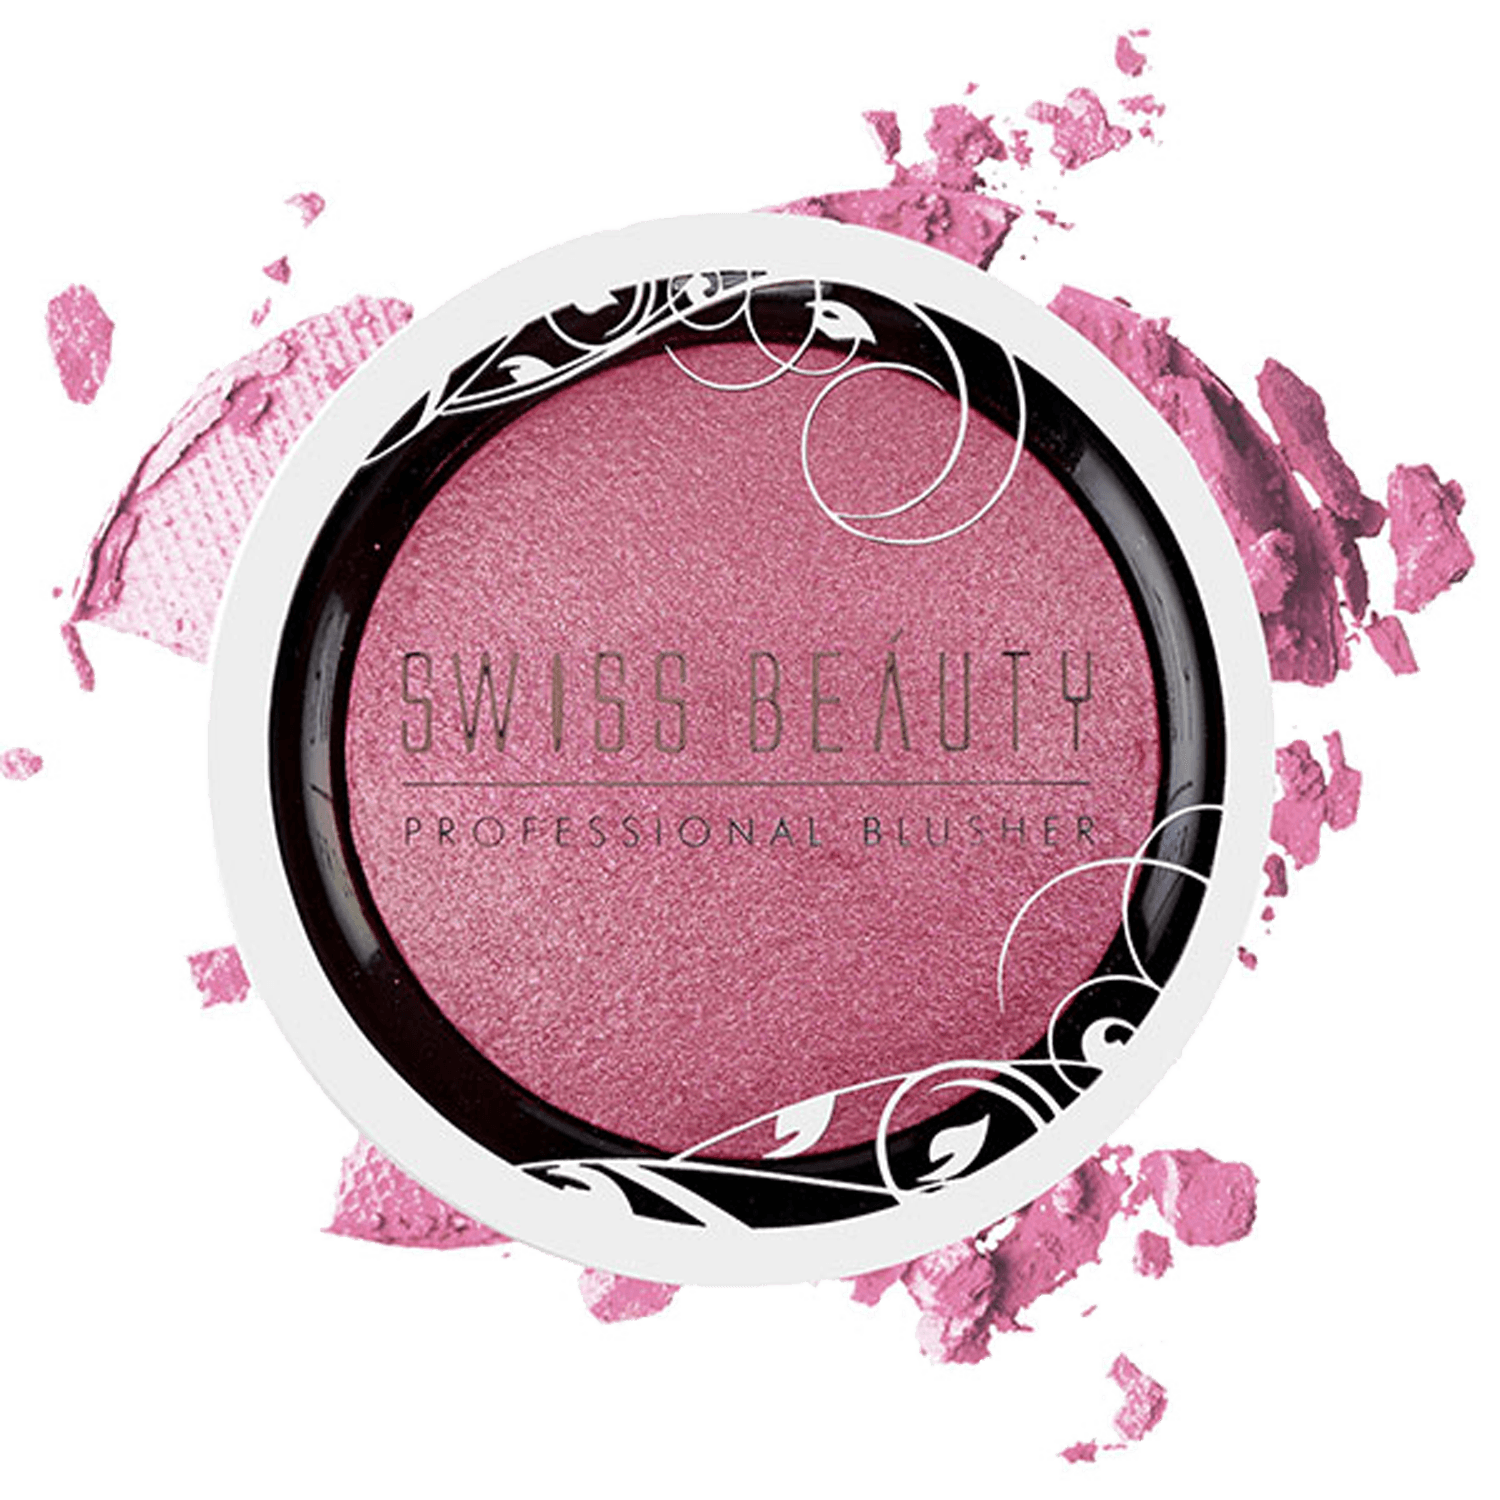 Swiss Beauty | Swiss Beauty Professional Blusher - 07 Baby Pink (6g)